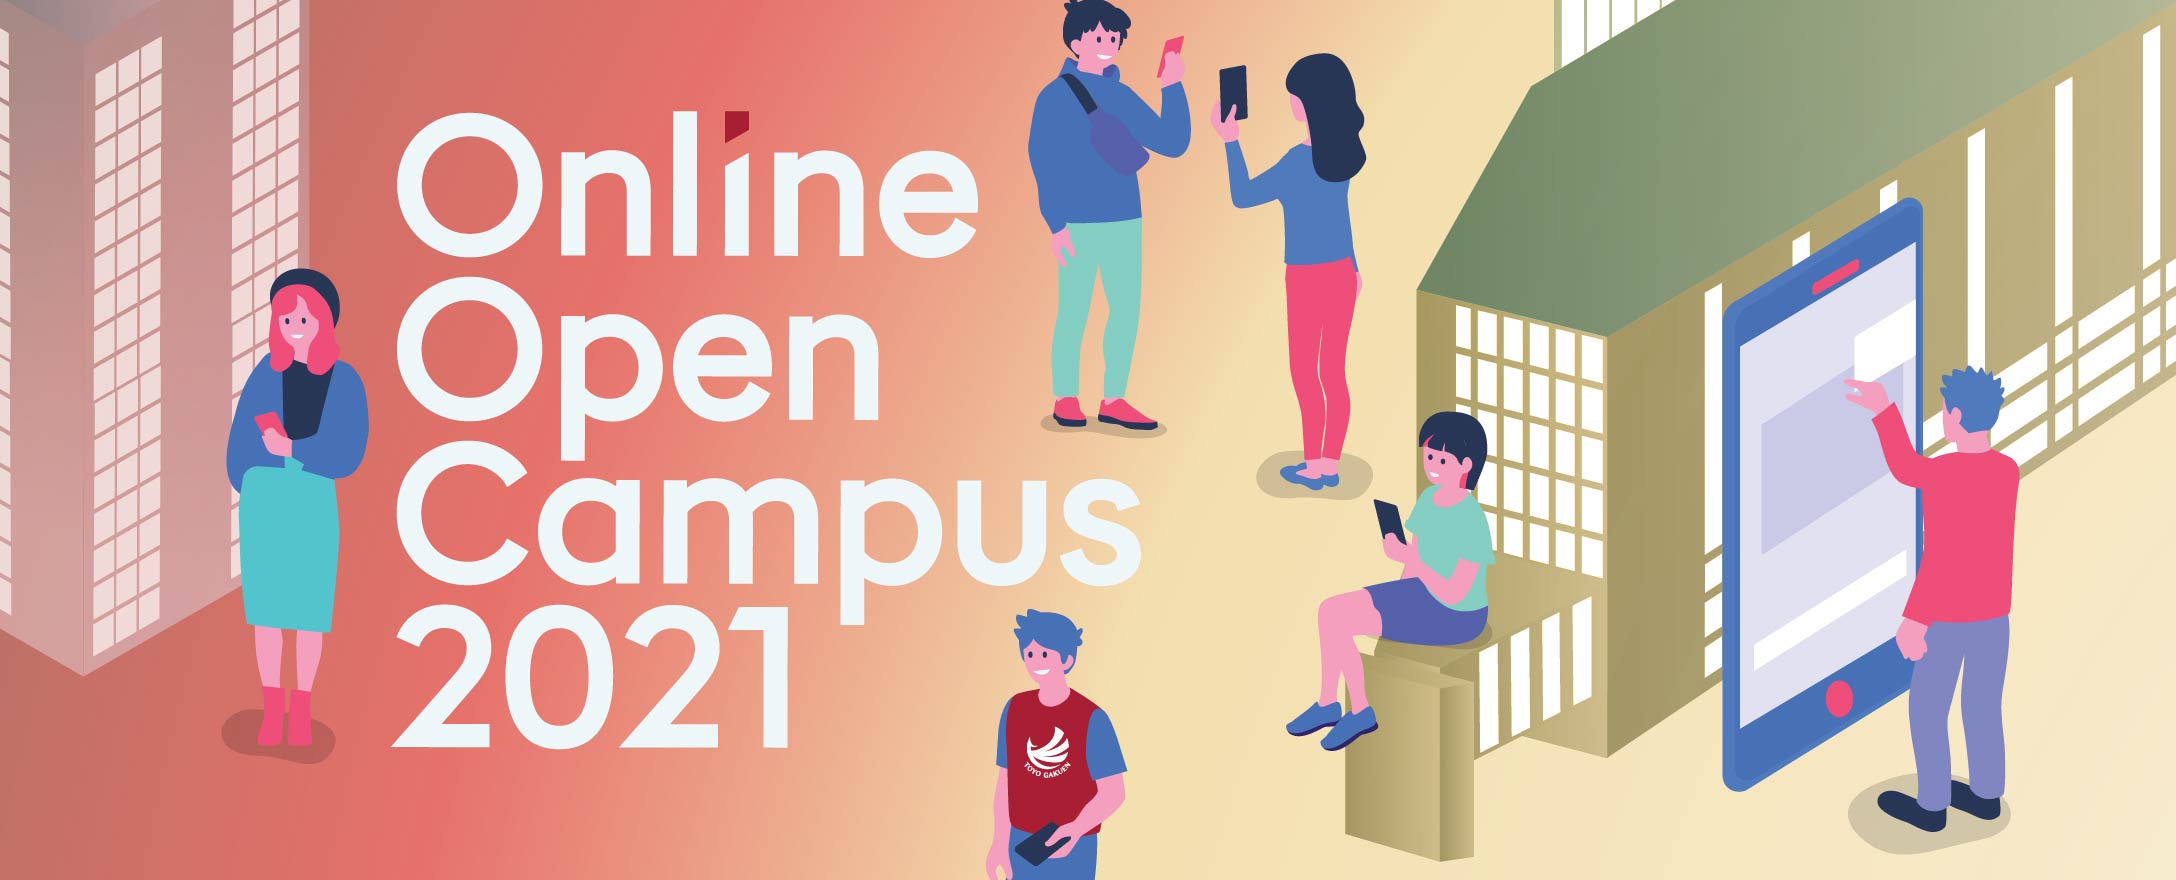 Online Open Campus 2021